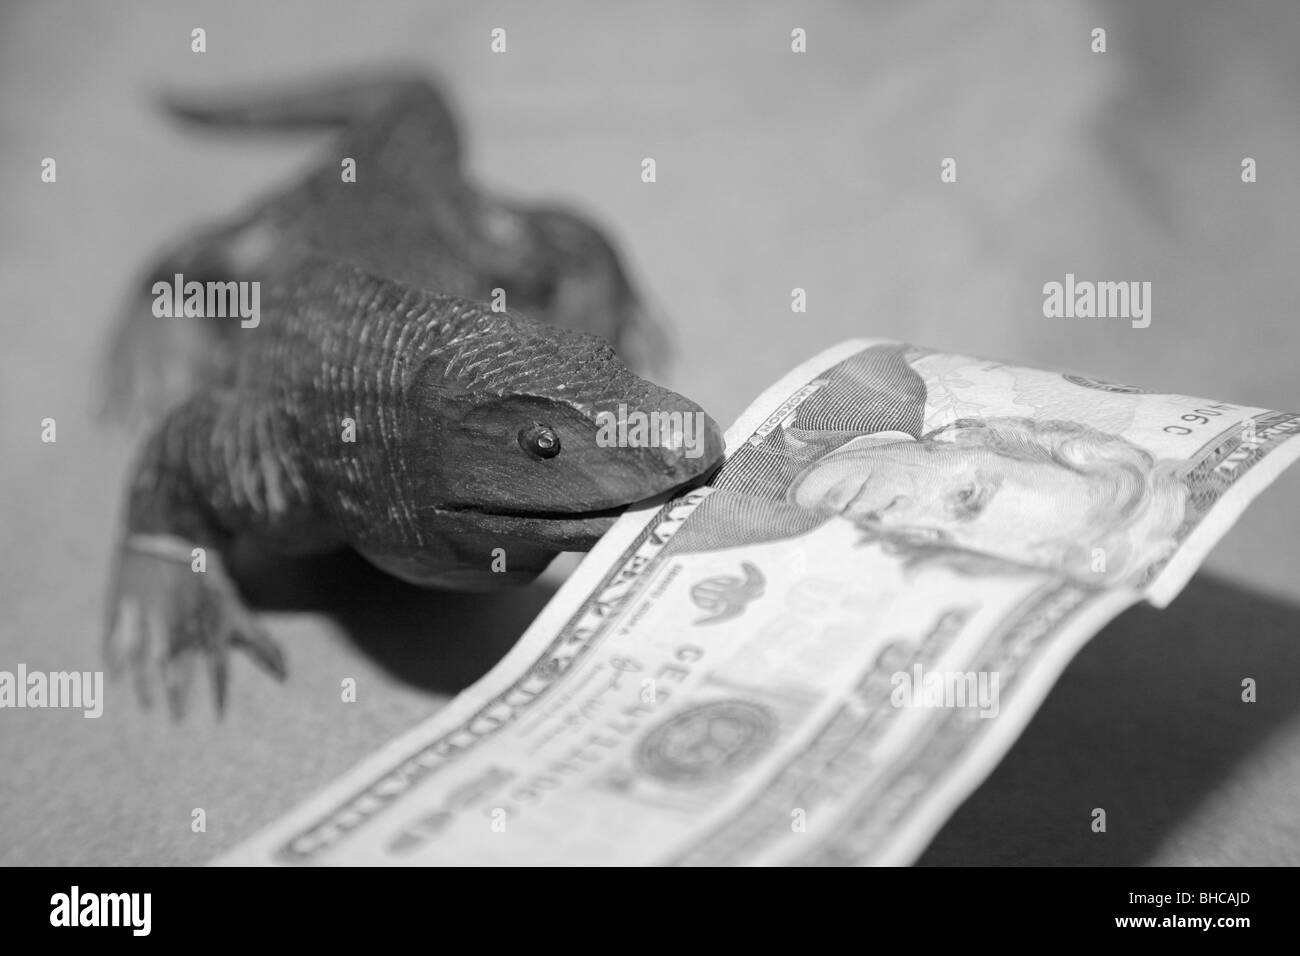 Lézard dragon de Komodo en bois sculpture souvenir nous mordre 20 Monnaie dollar bank note dans sa bouche Banque D'Images